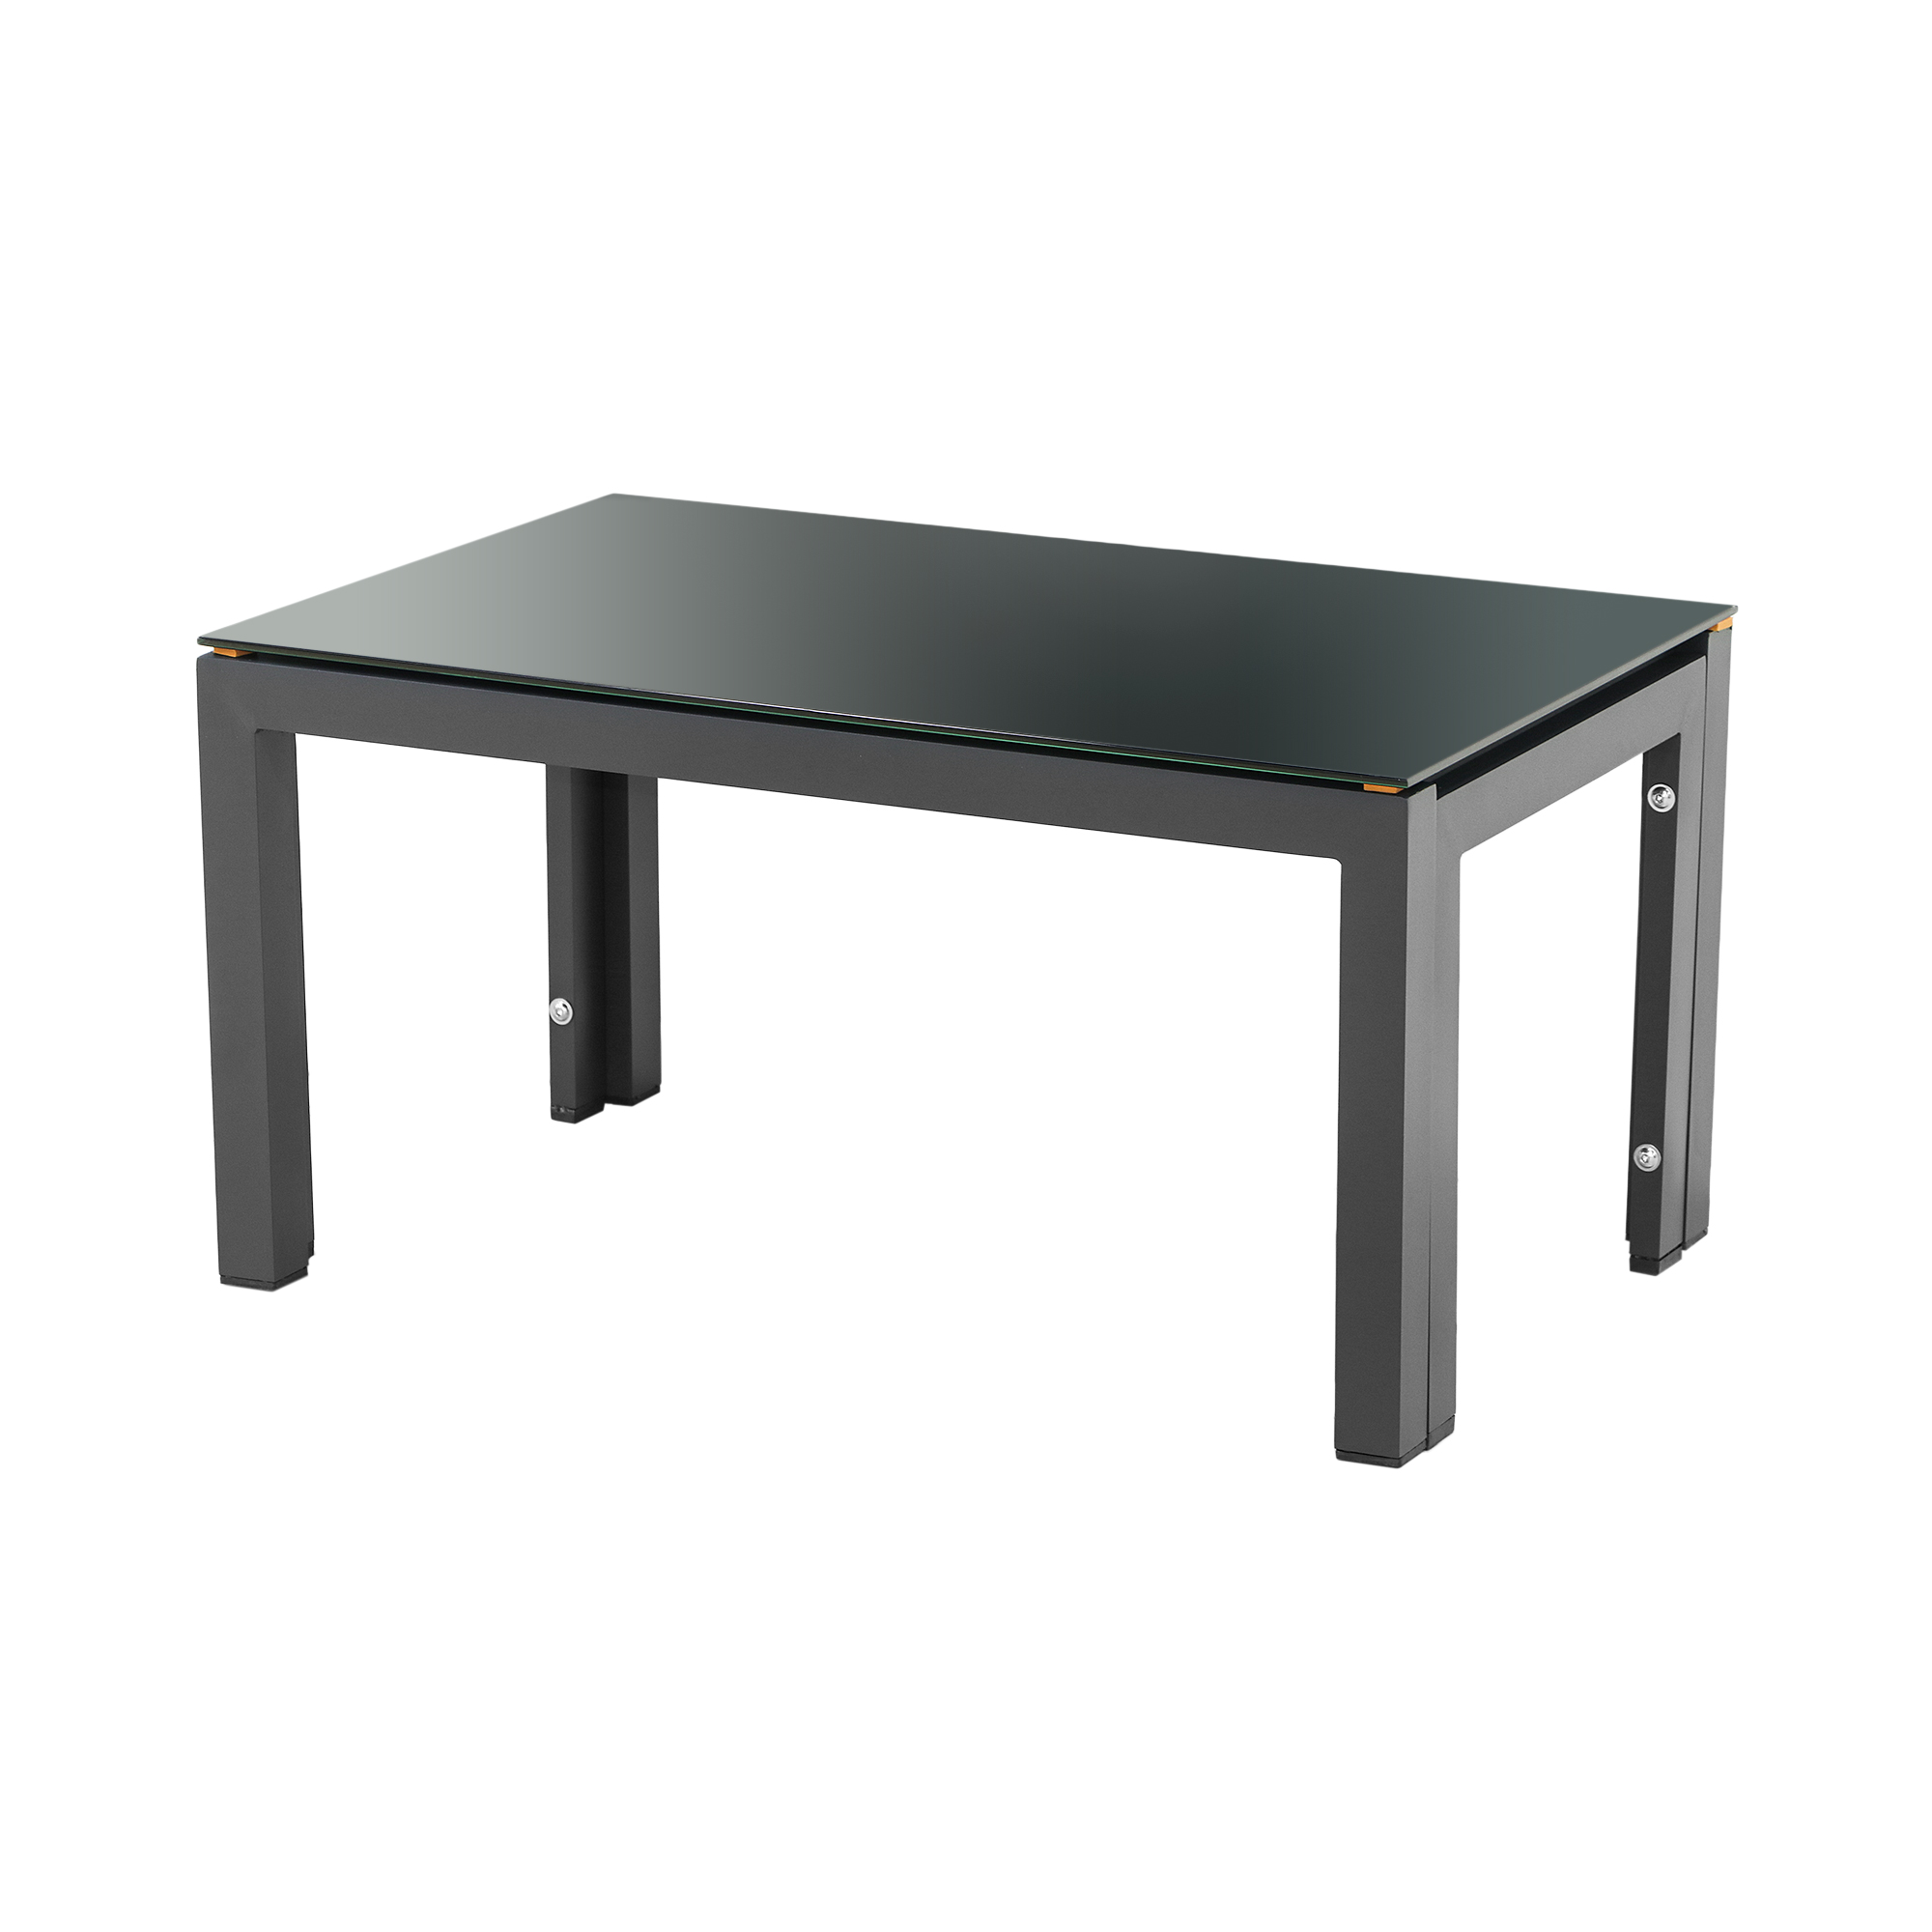 Комплект мебели Erinoz Daphne, цвет серый, размер 60x124x75 см - фото 4